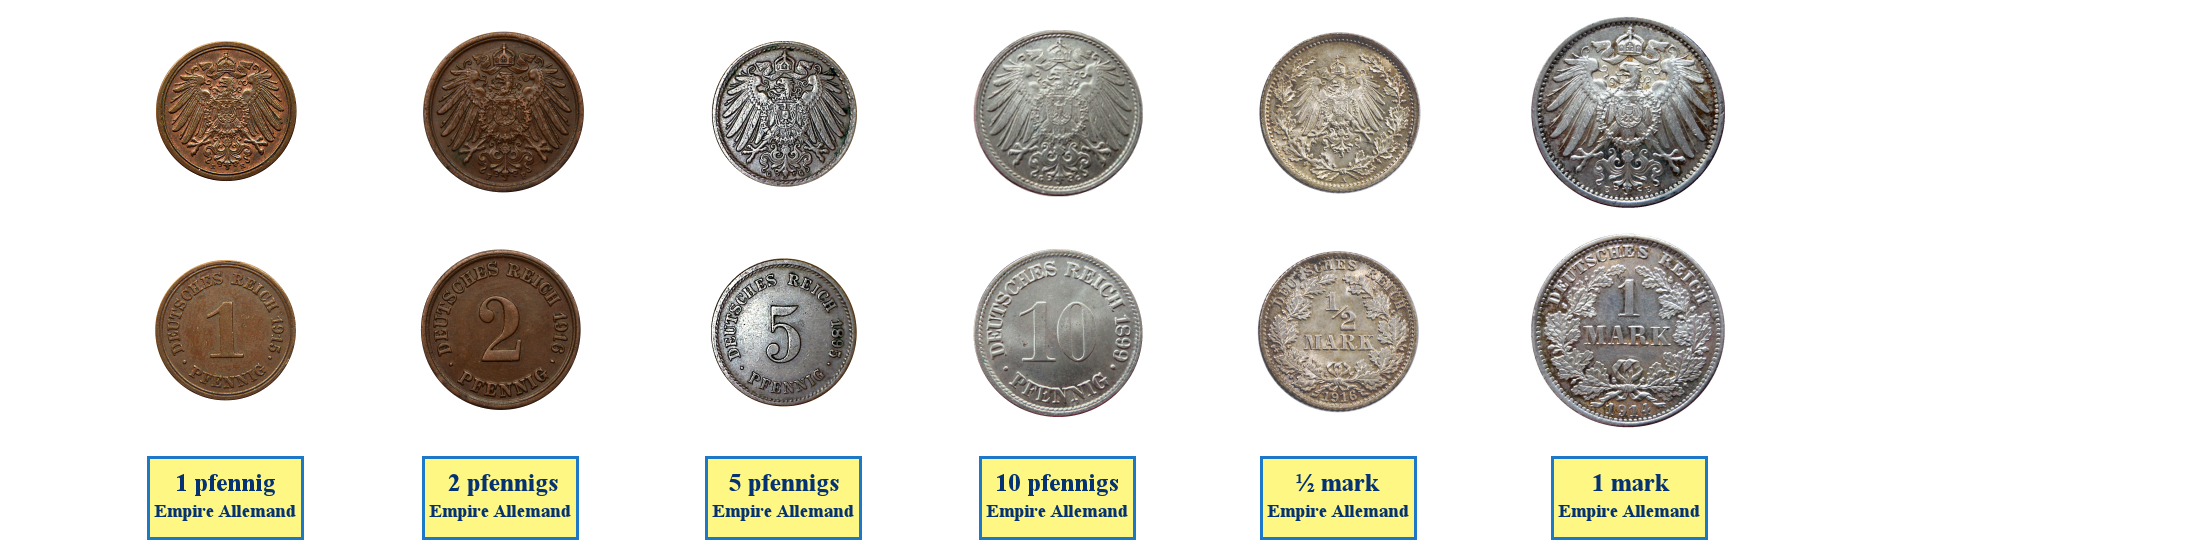 Photos de pièces de monnaies de l'Empire Allemand